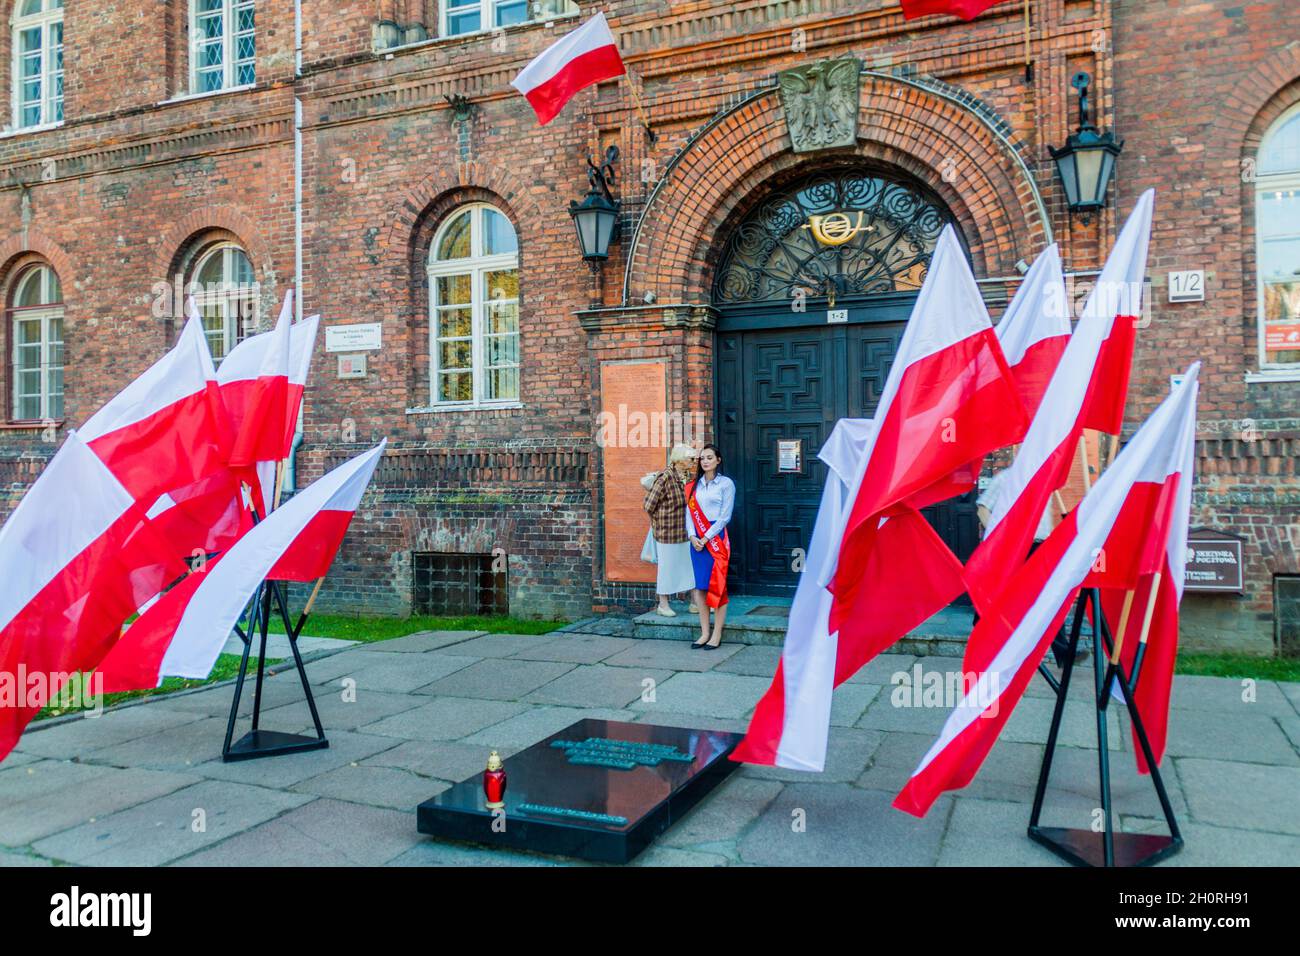 GDANSK, POLONIA - 1 SETTEMBRE 2016: Bandiere polacche commemorano la difesa dell'Ufficio postale polacco il 1 settembre 1939. Foto Stock